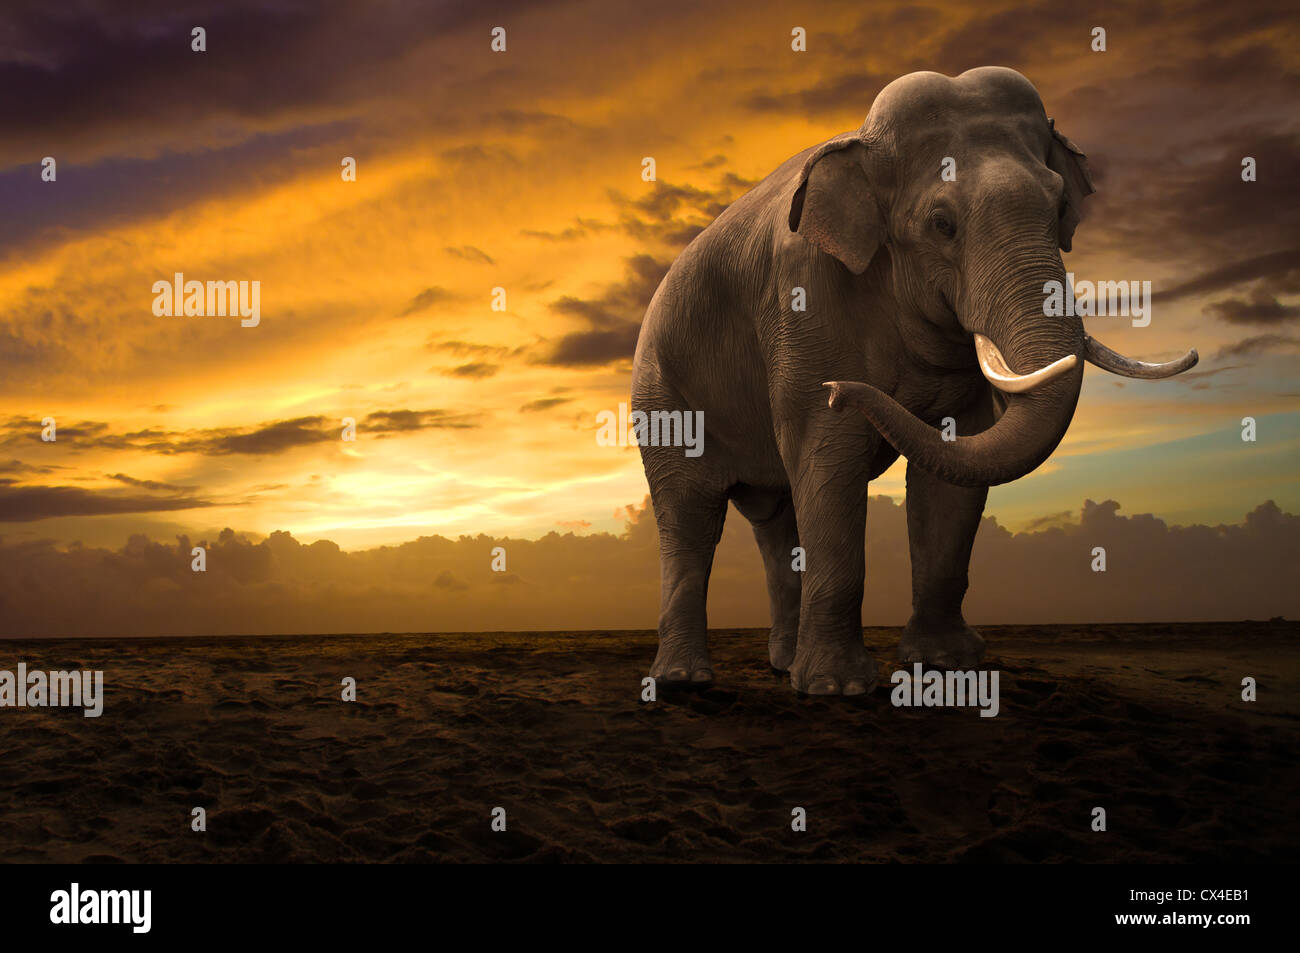 Elephant walking outdoor le coucher du soleil Banque D'Images